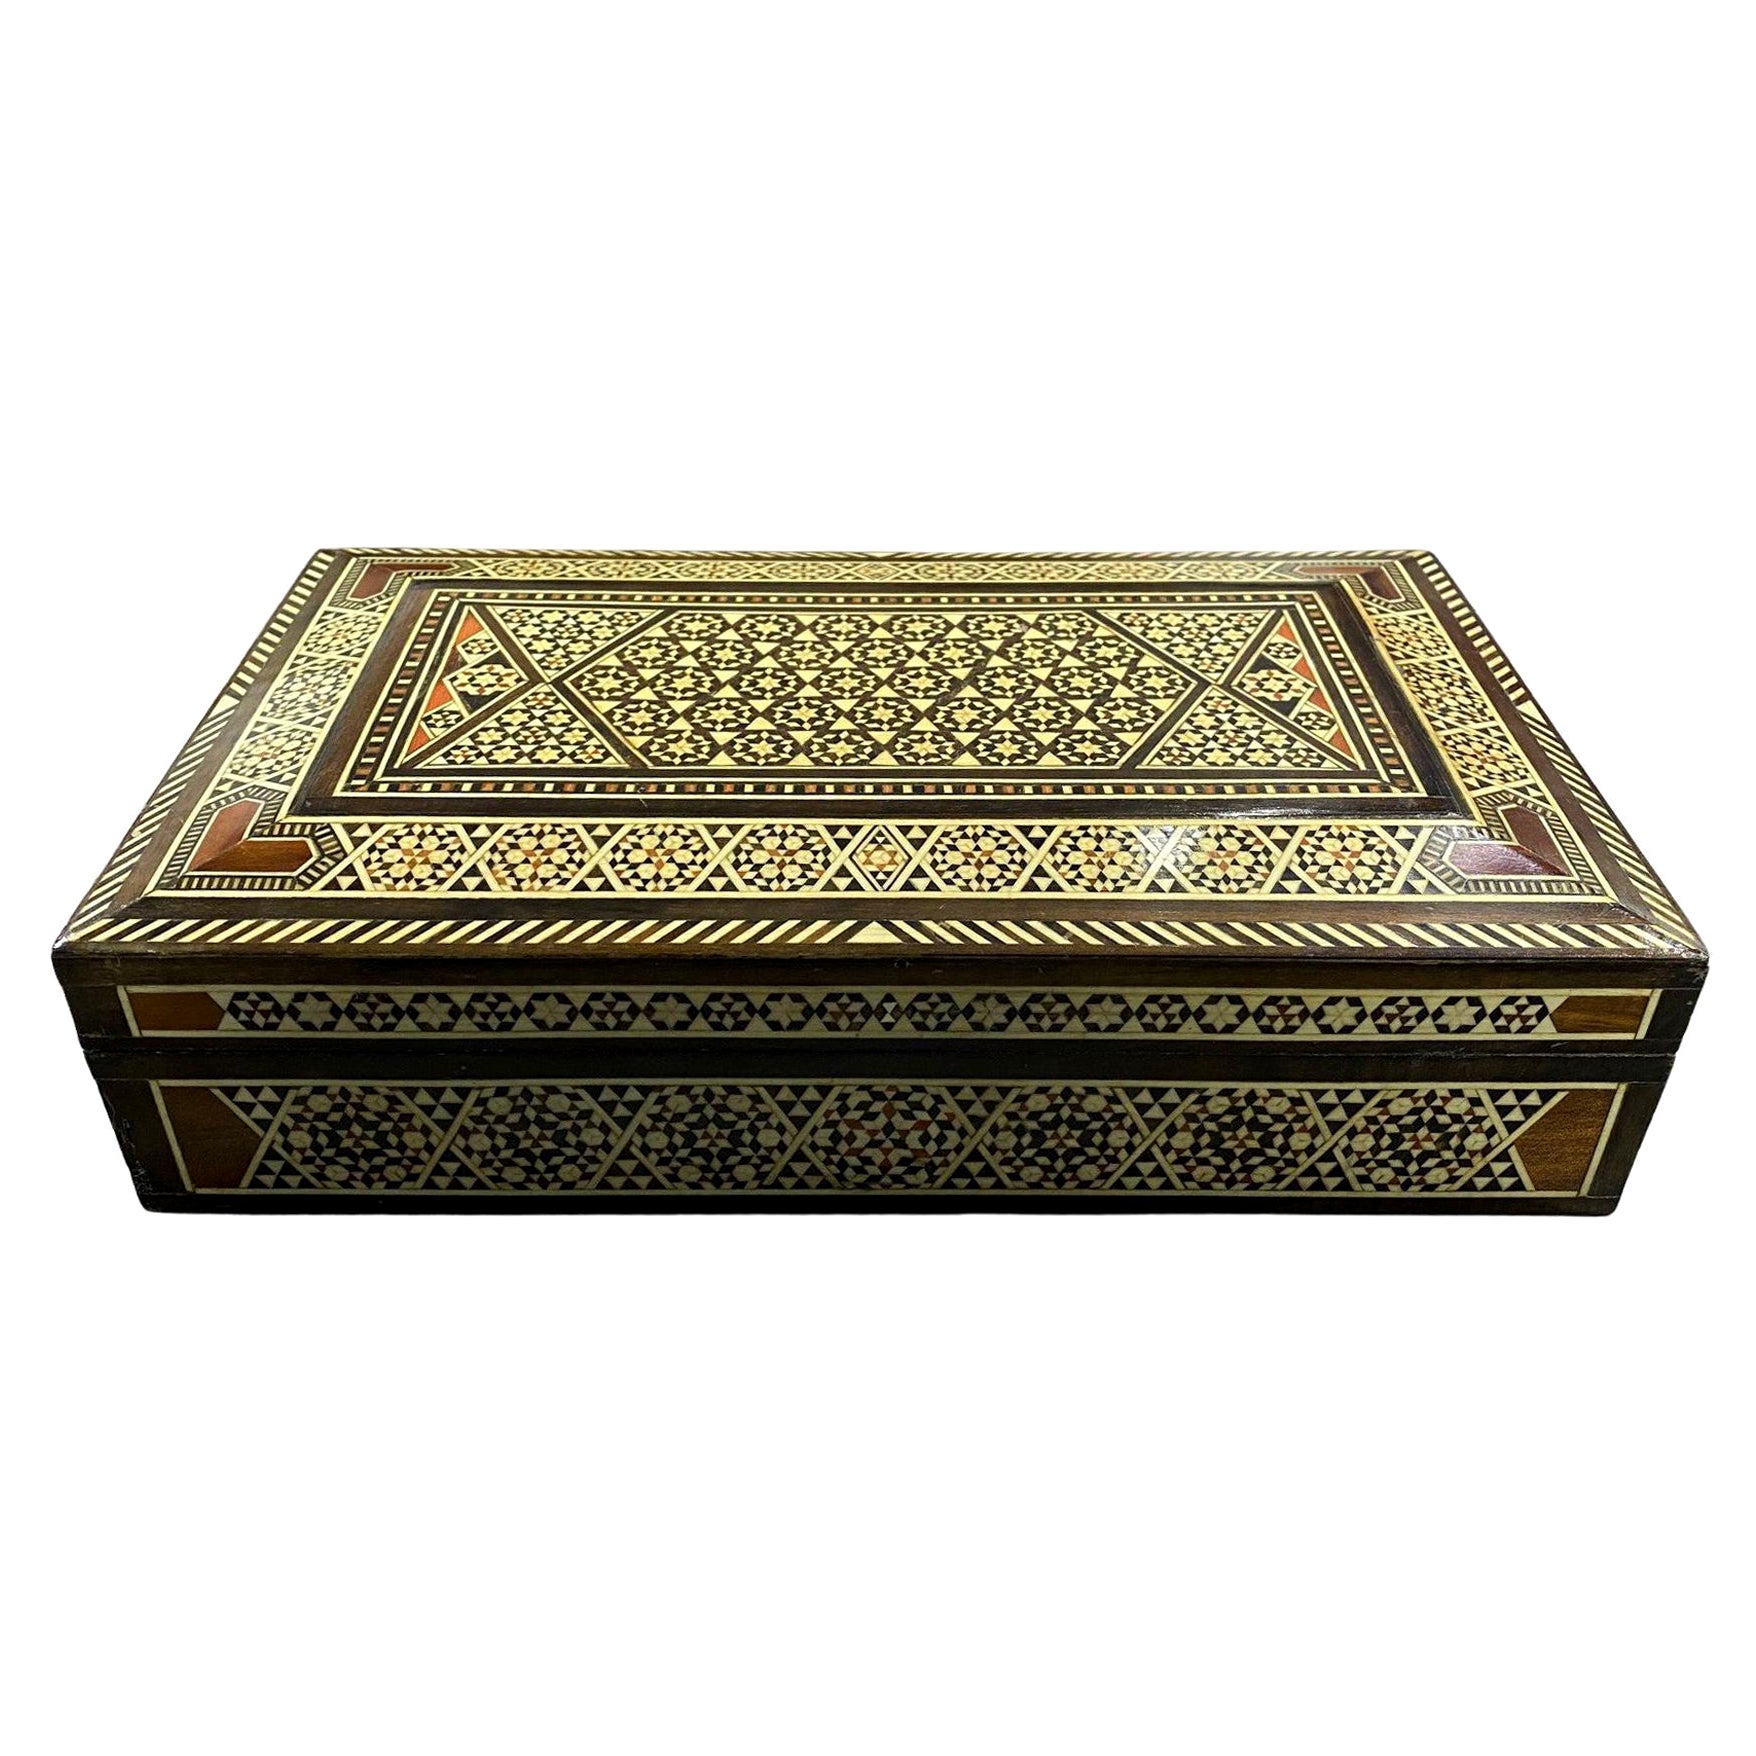 Grande boîte à bijoux marocaine mauresque du Moyen-Orient en bois incrusté de micro-mosaïque